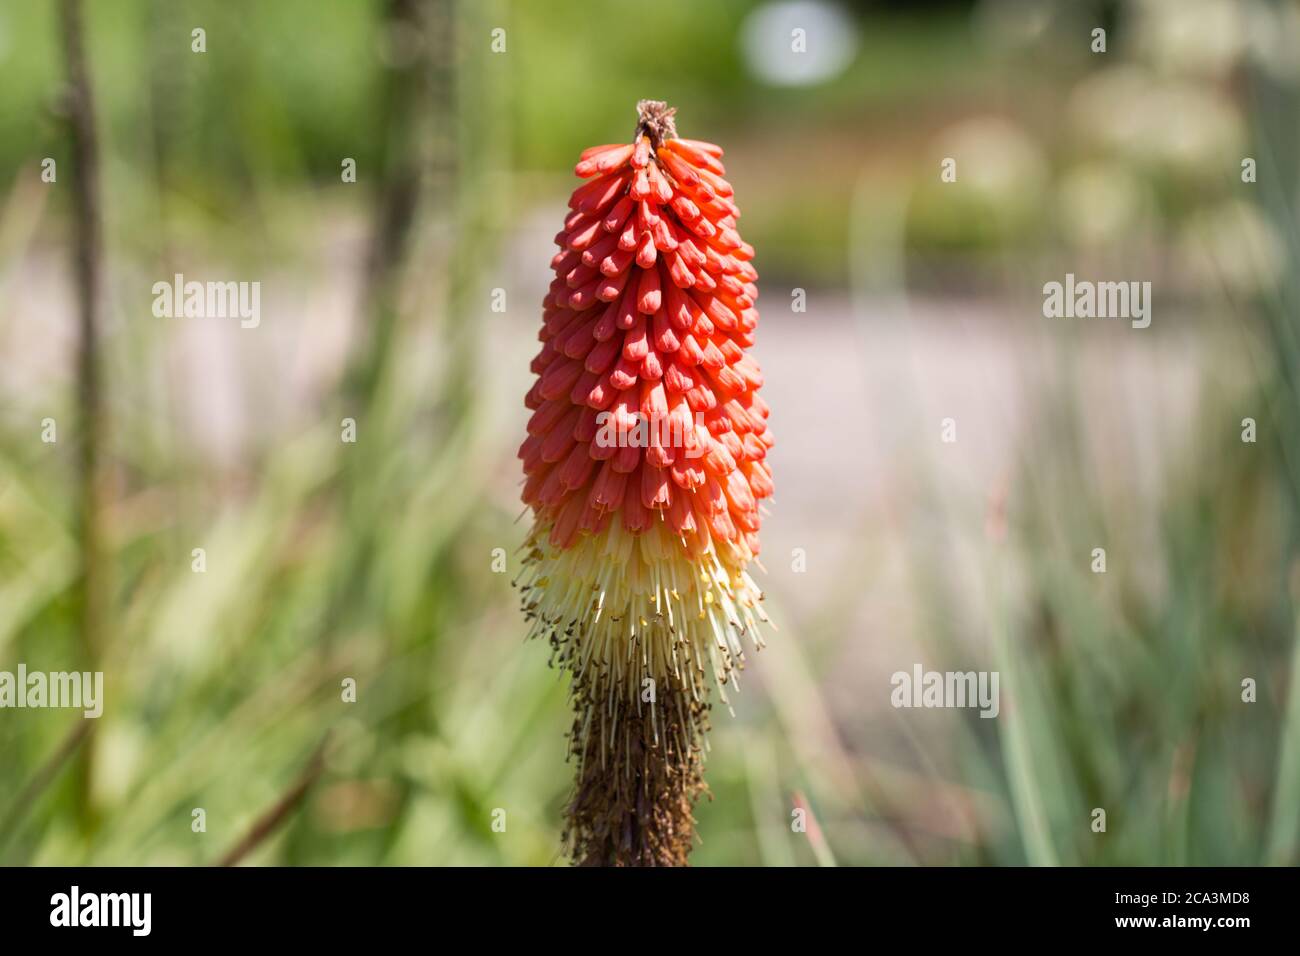 Nahaufnahme von Kniphofia caulescens. Pflanze mit einzigartig geformten roten Blüten. Weitere gebräuchliche Namen sind Red Hot Poker und Torch Lily. Stockfoto